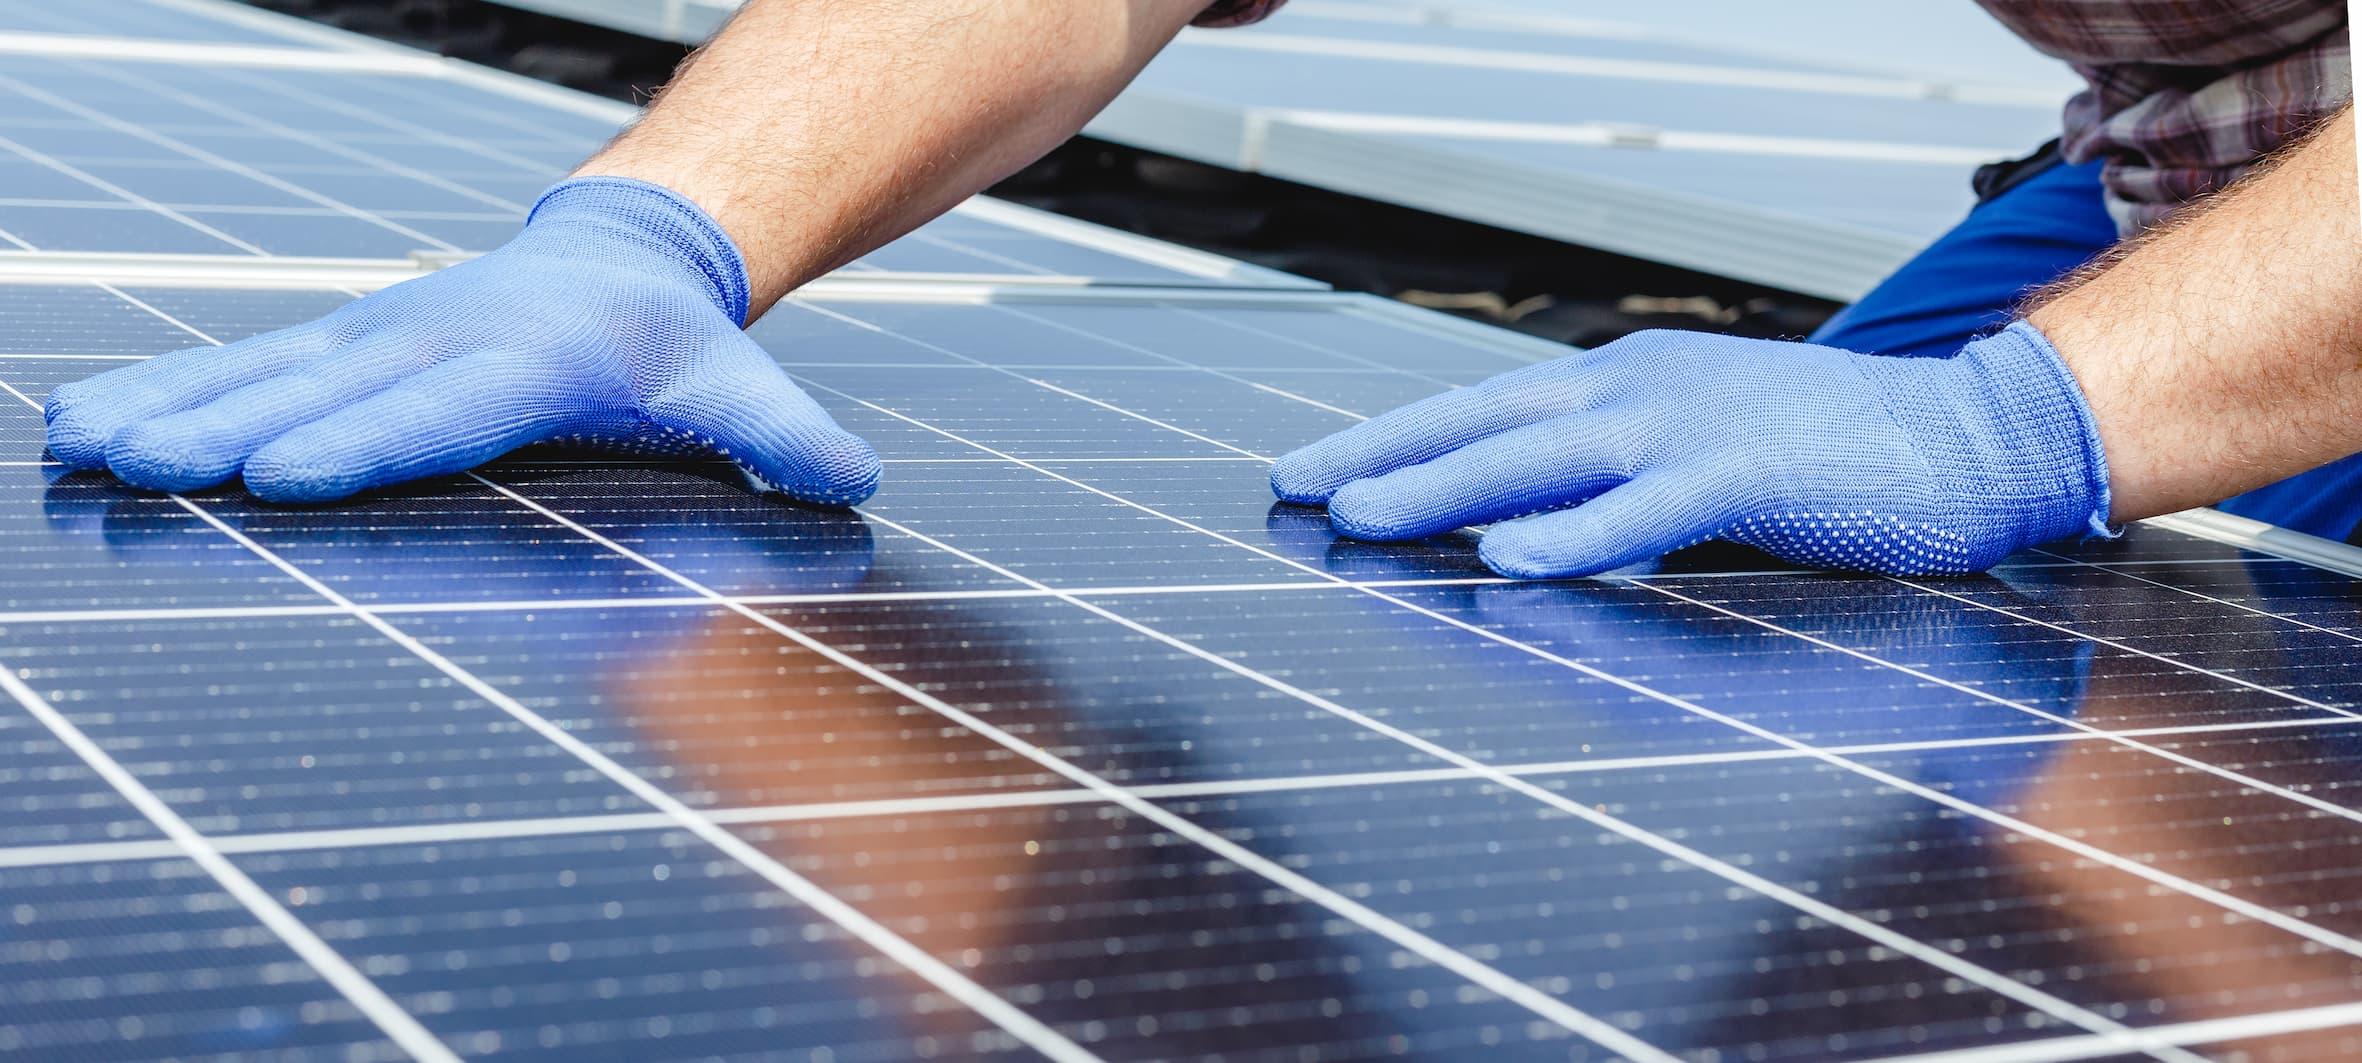 Sebrae Minas - Energia Fotovoltaica: desafios e oportunidades para os negócios